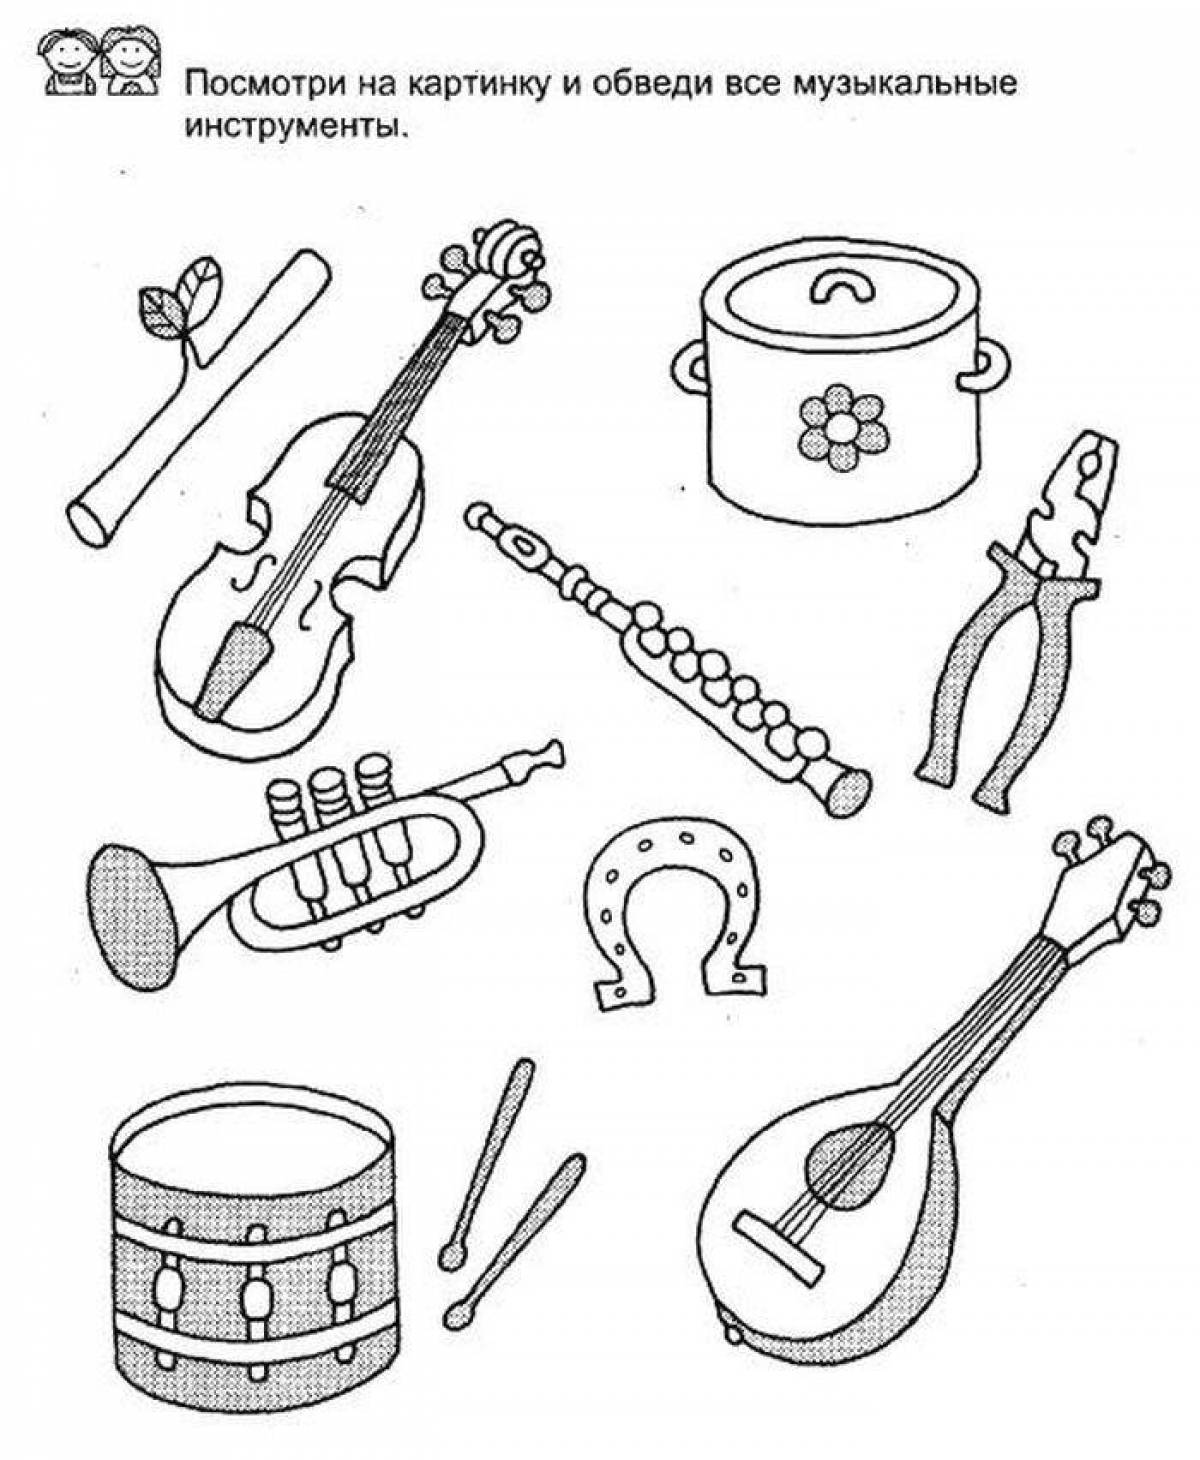 Игры на тему музыка. Музыкальные инструменты задания. Музыкальные инструменты задания для детей. Инструменты задания для детей. Муз инструменты задания для дошкольников.